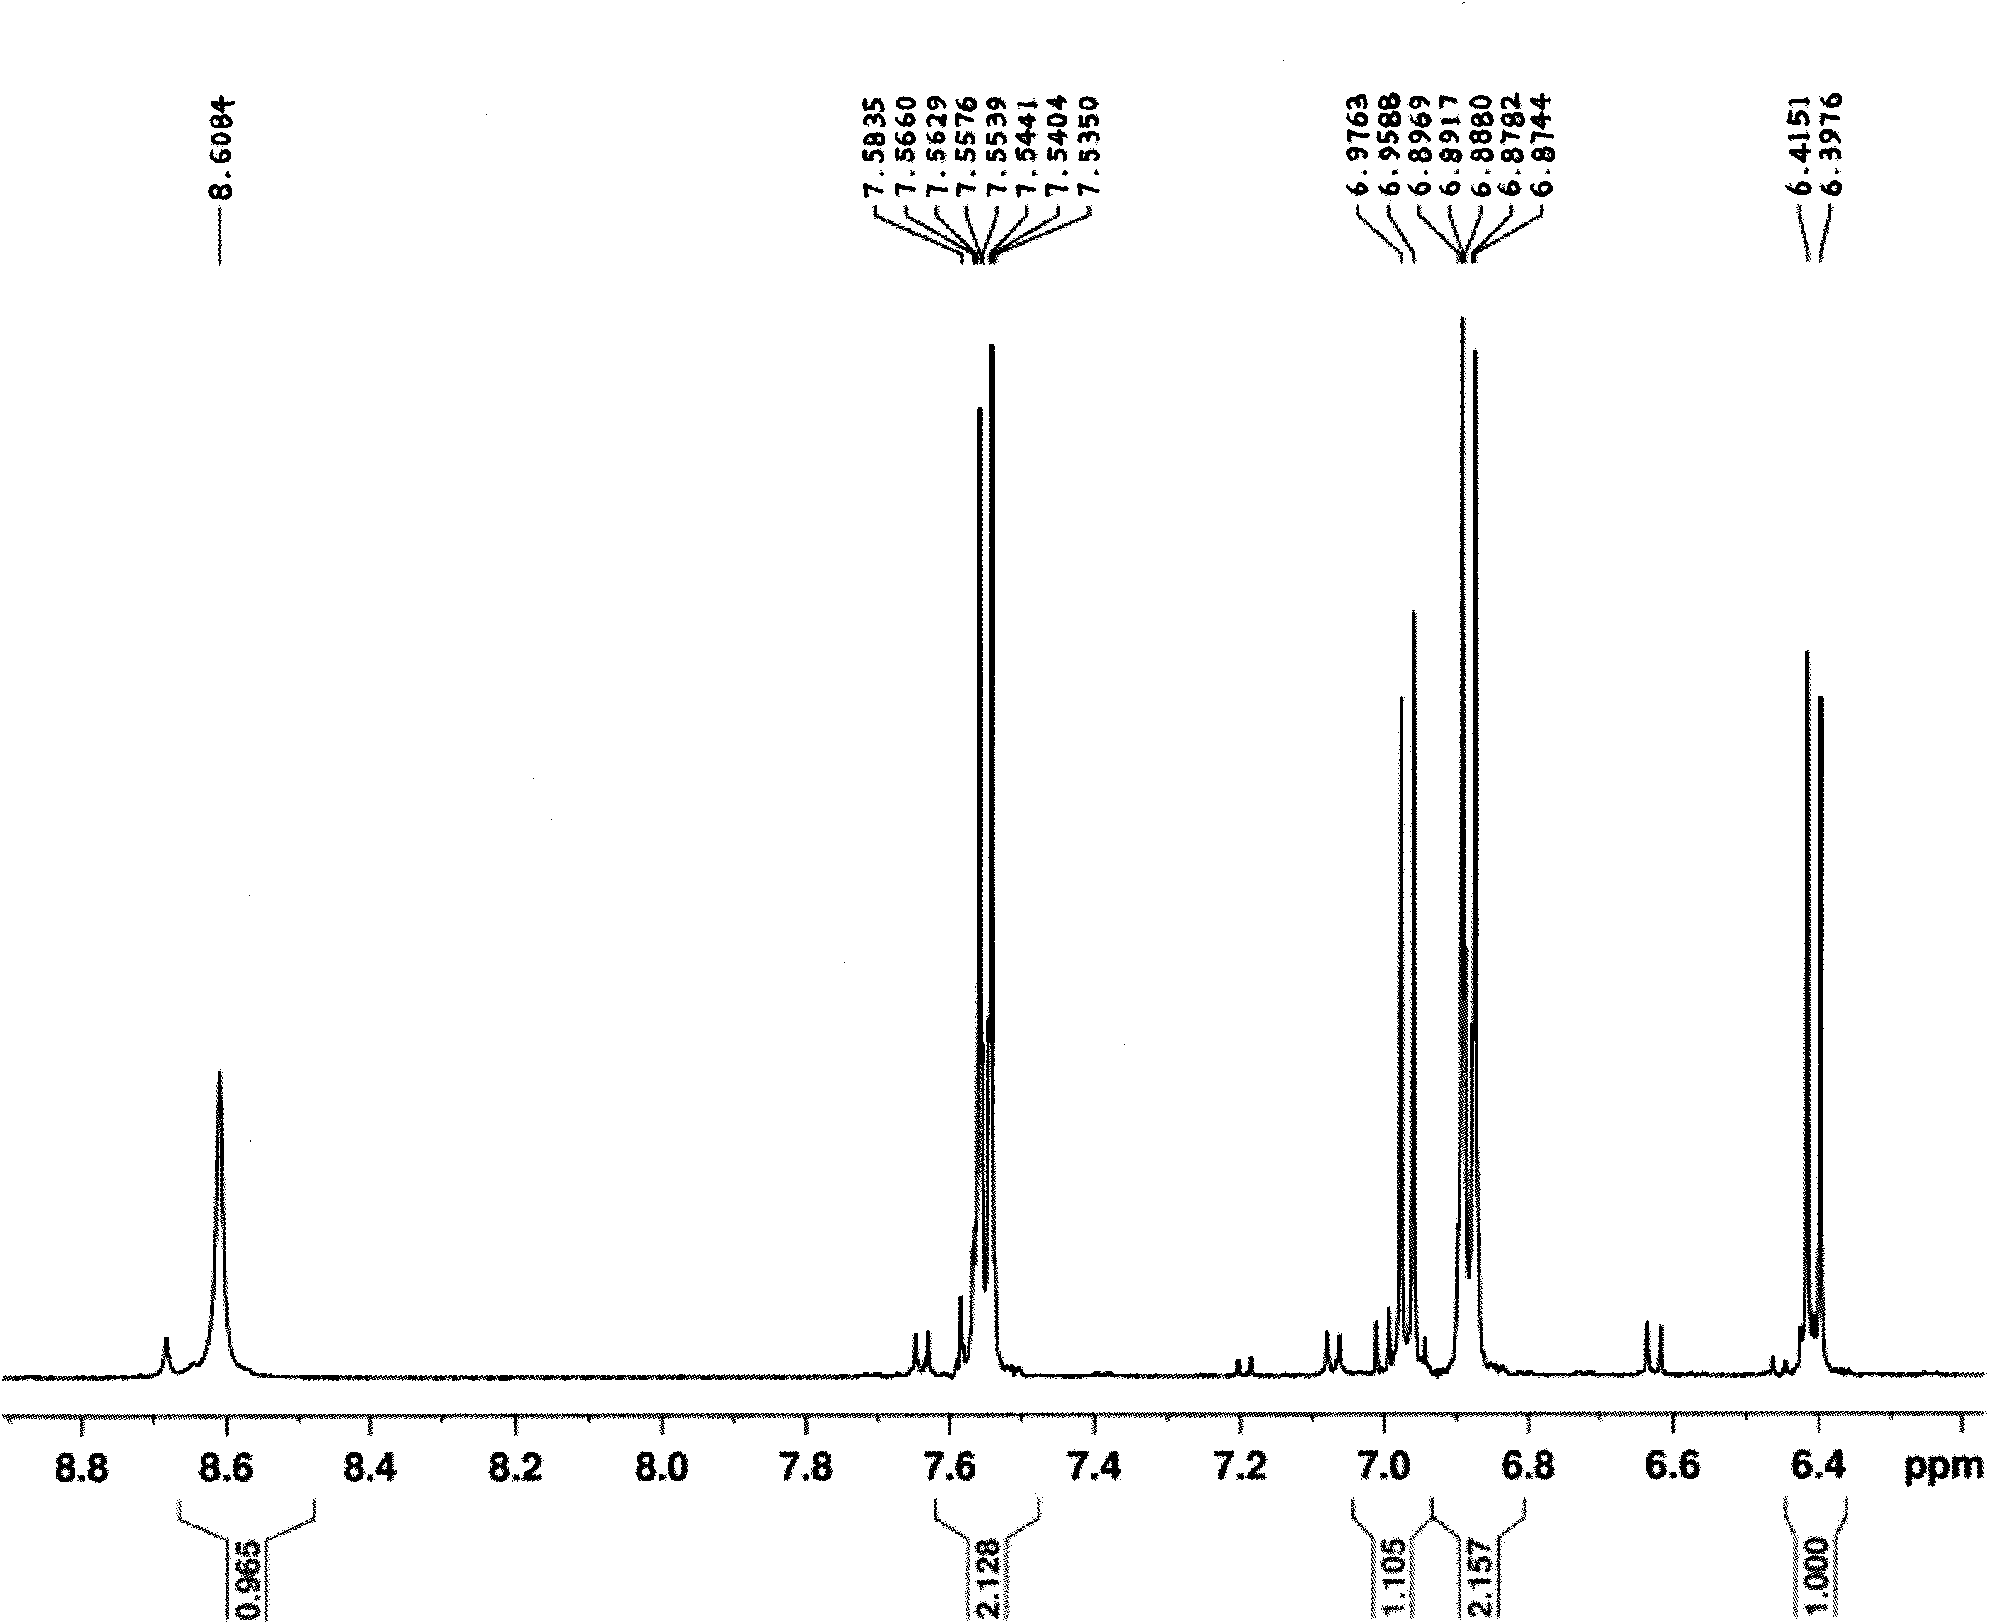 Method for synthesizing 2,3,4,4'-tetrahydroxybenzophenone